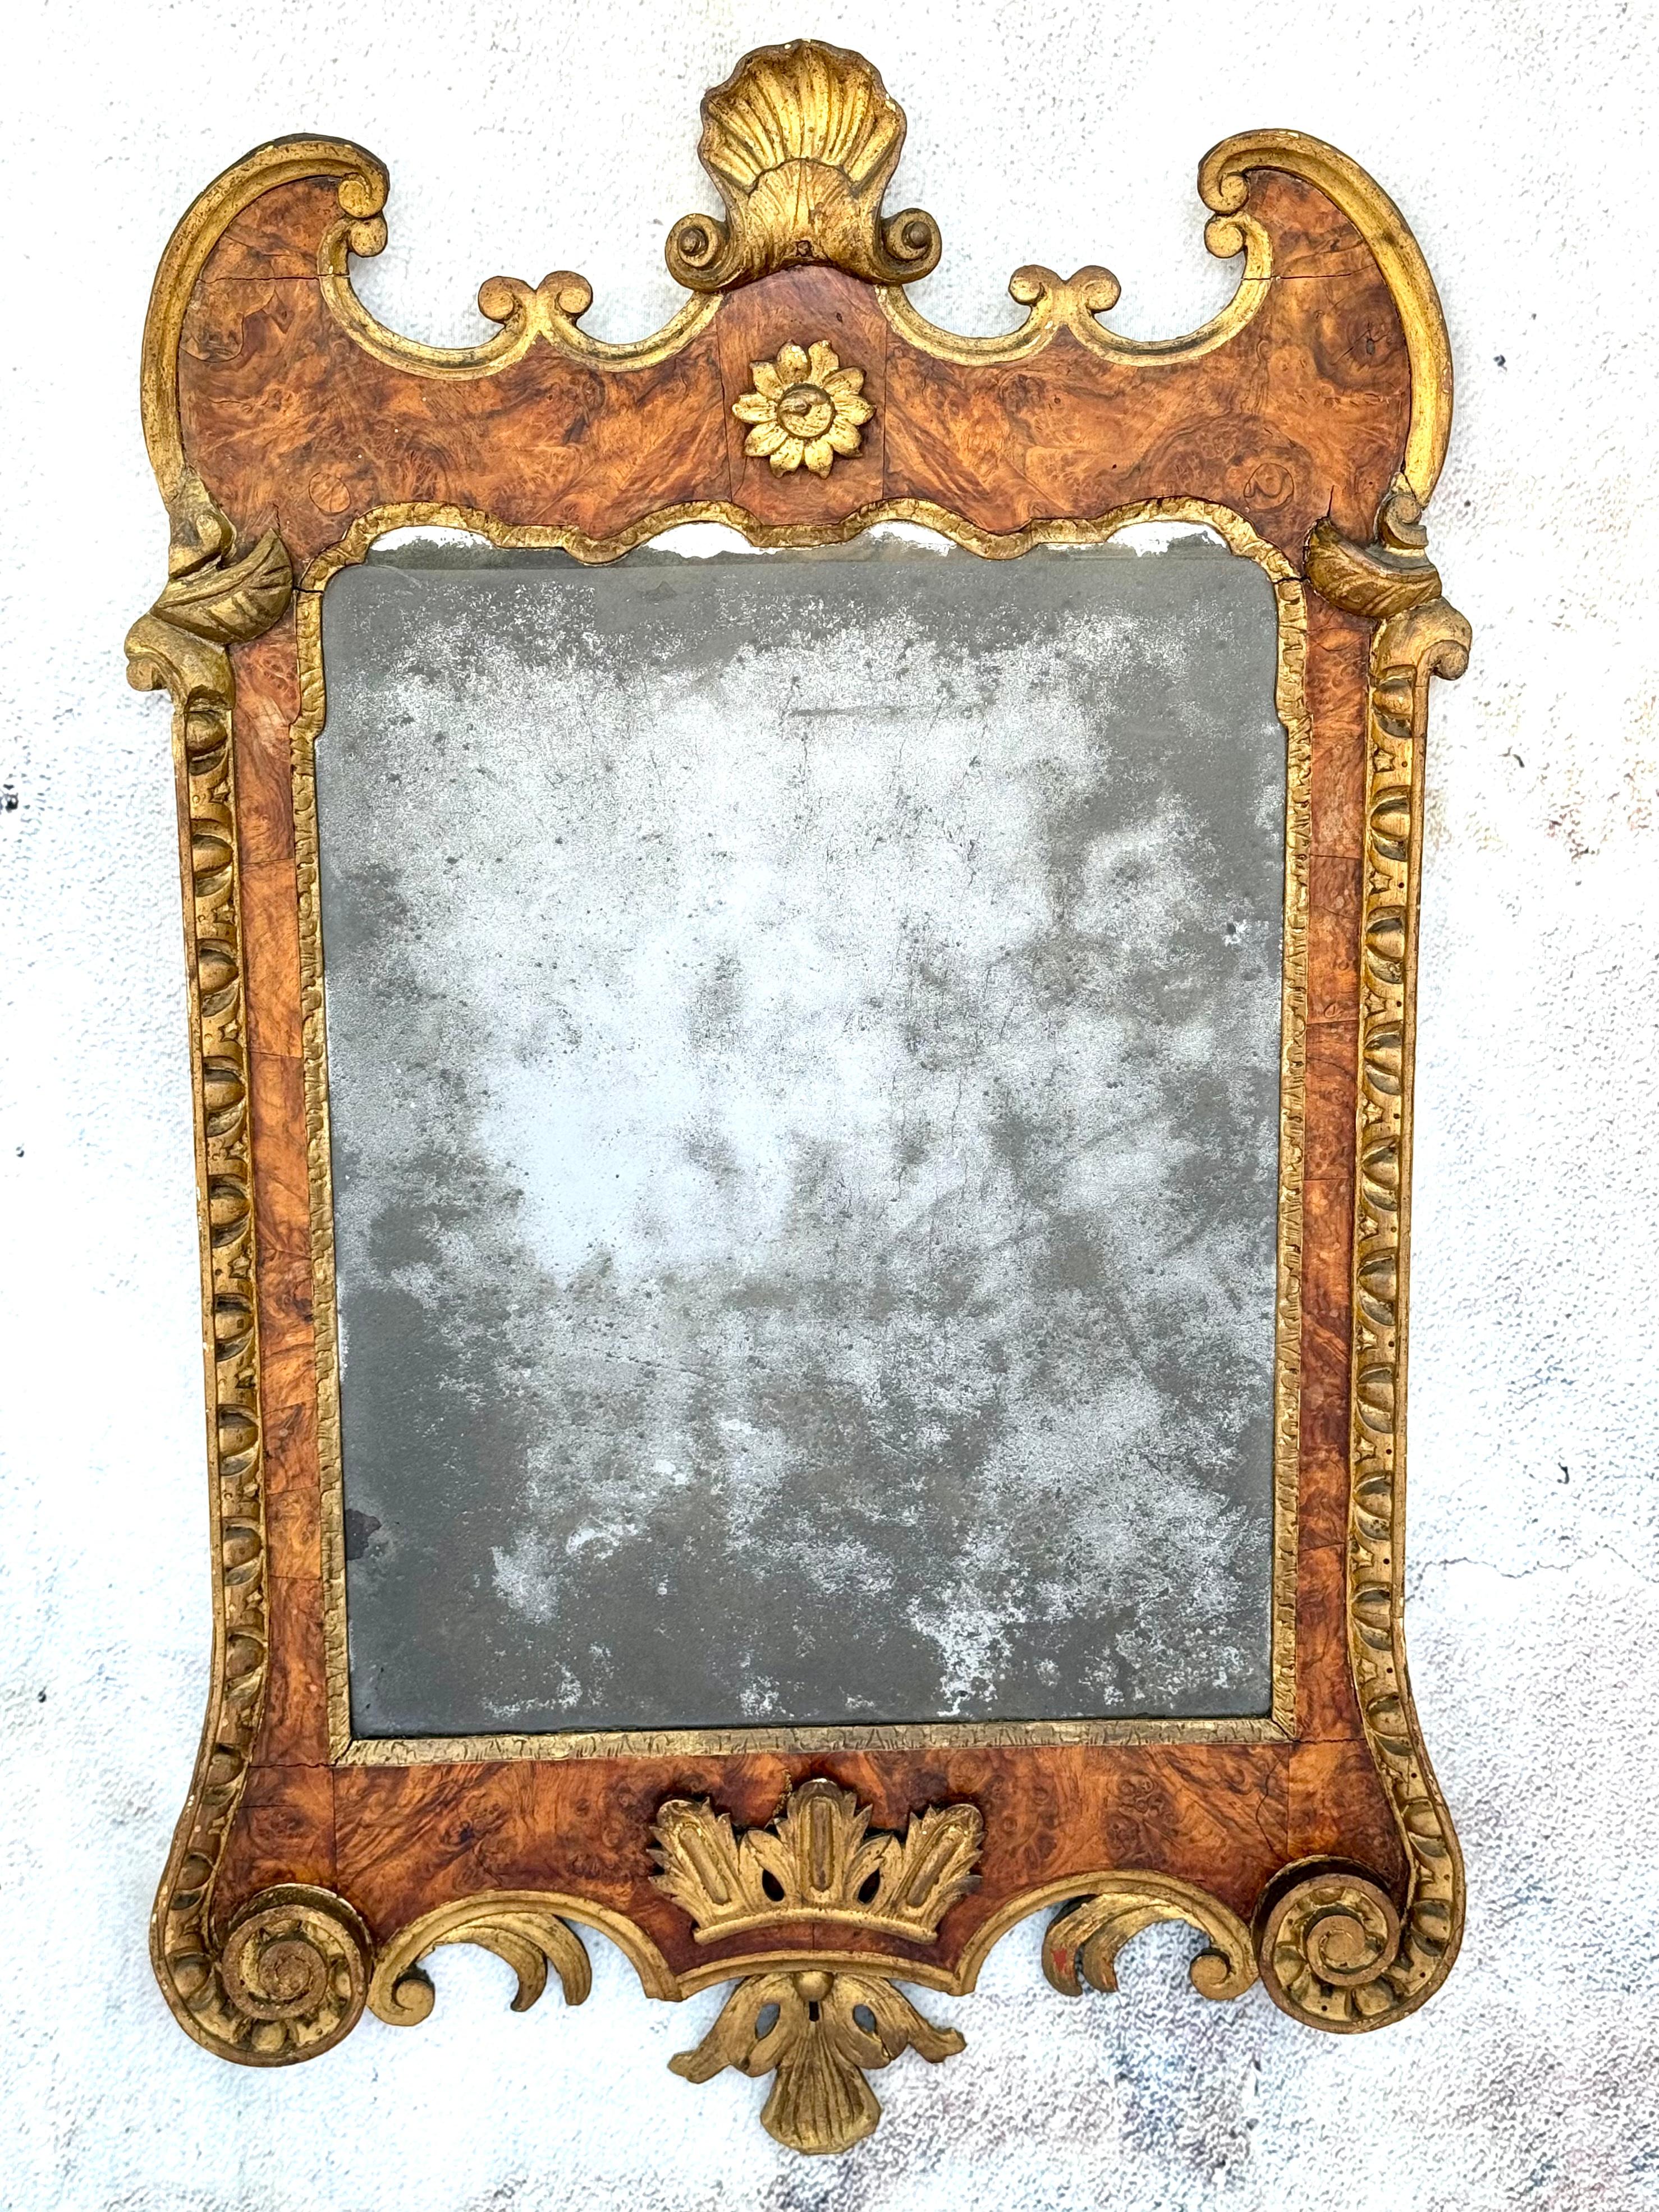 Un beau et impressionnant miroir géorgien du XVIIIe siècle en bois doré et ronce de noyer. Le cadre en noyer est entouré d'une dorure ornementale et d'une crête festonnée. La partie inférieure est centrée sur une couronne en bois doré. Conservation